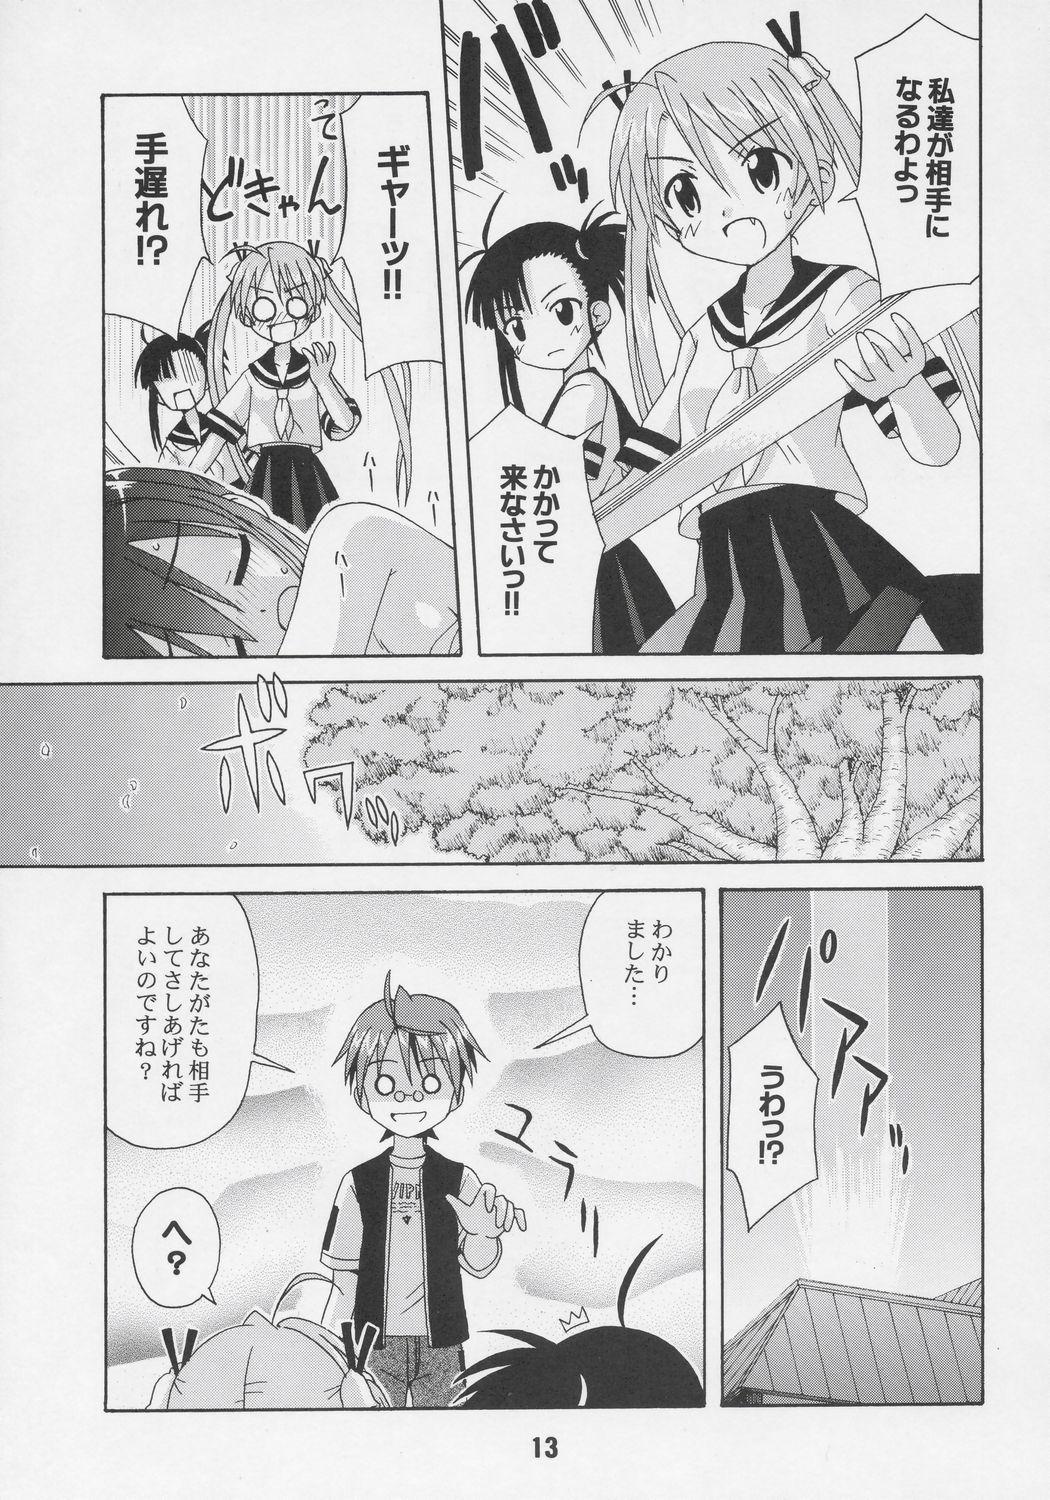 Pussy Licking Negina. 6 - Mahou sensei negima 19yo - Page 12